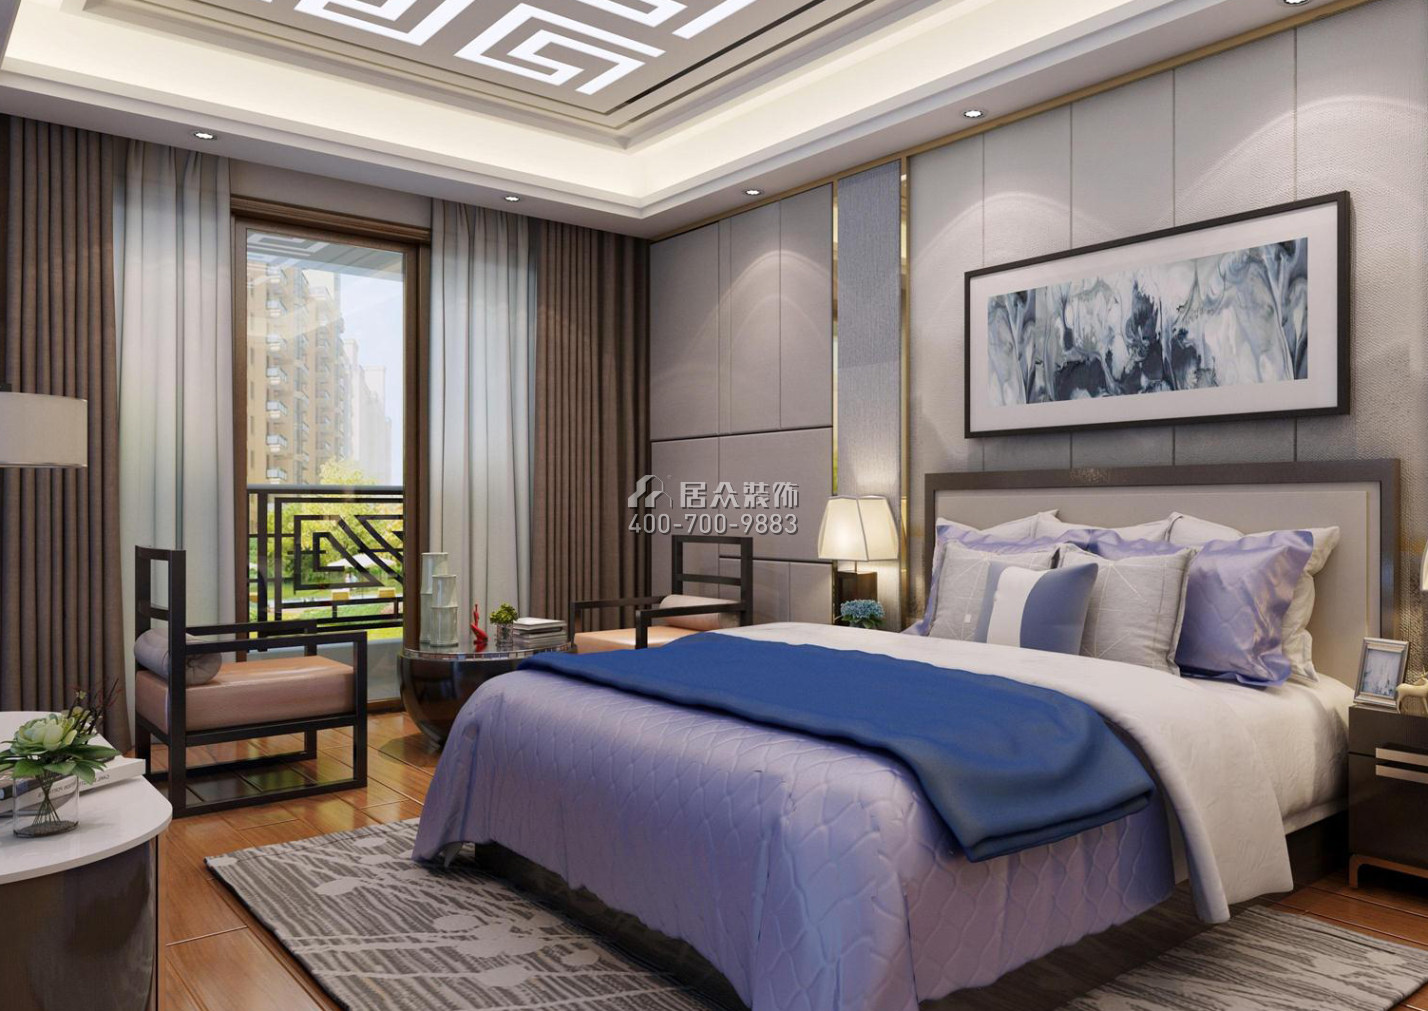 枫丹雅苑145平方米中式风格平层户型卧室装修效果图